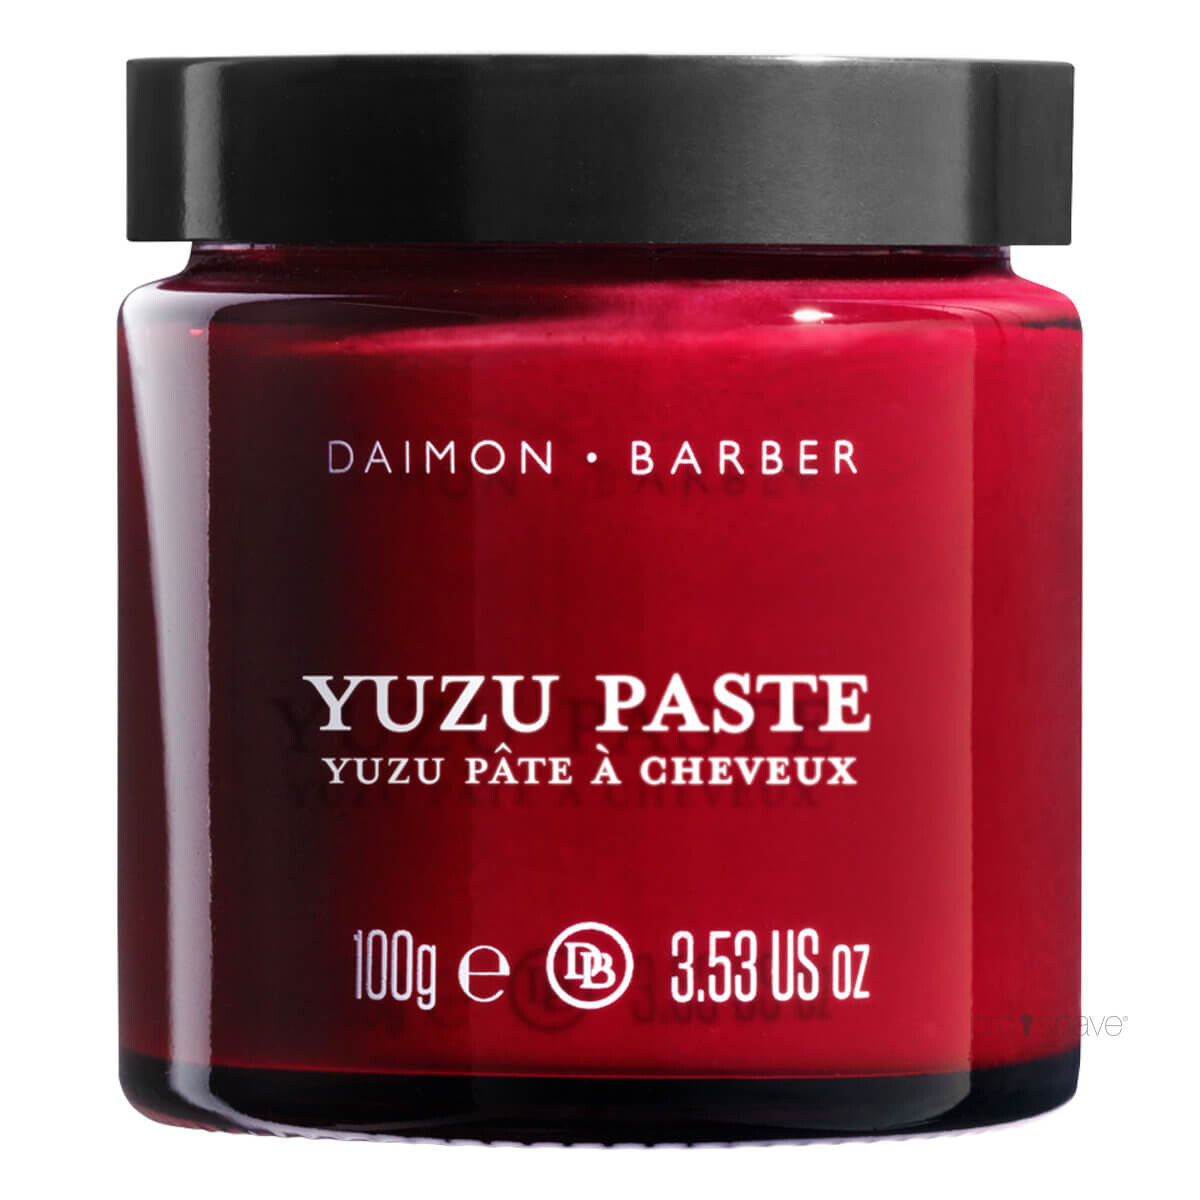 Daimon Barber Yuzu Paste, 100 gr.